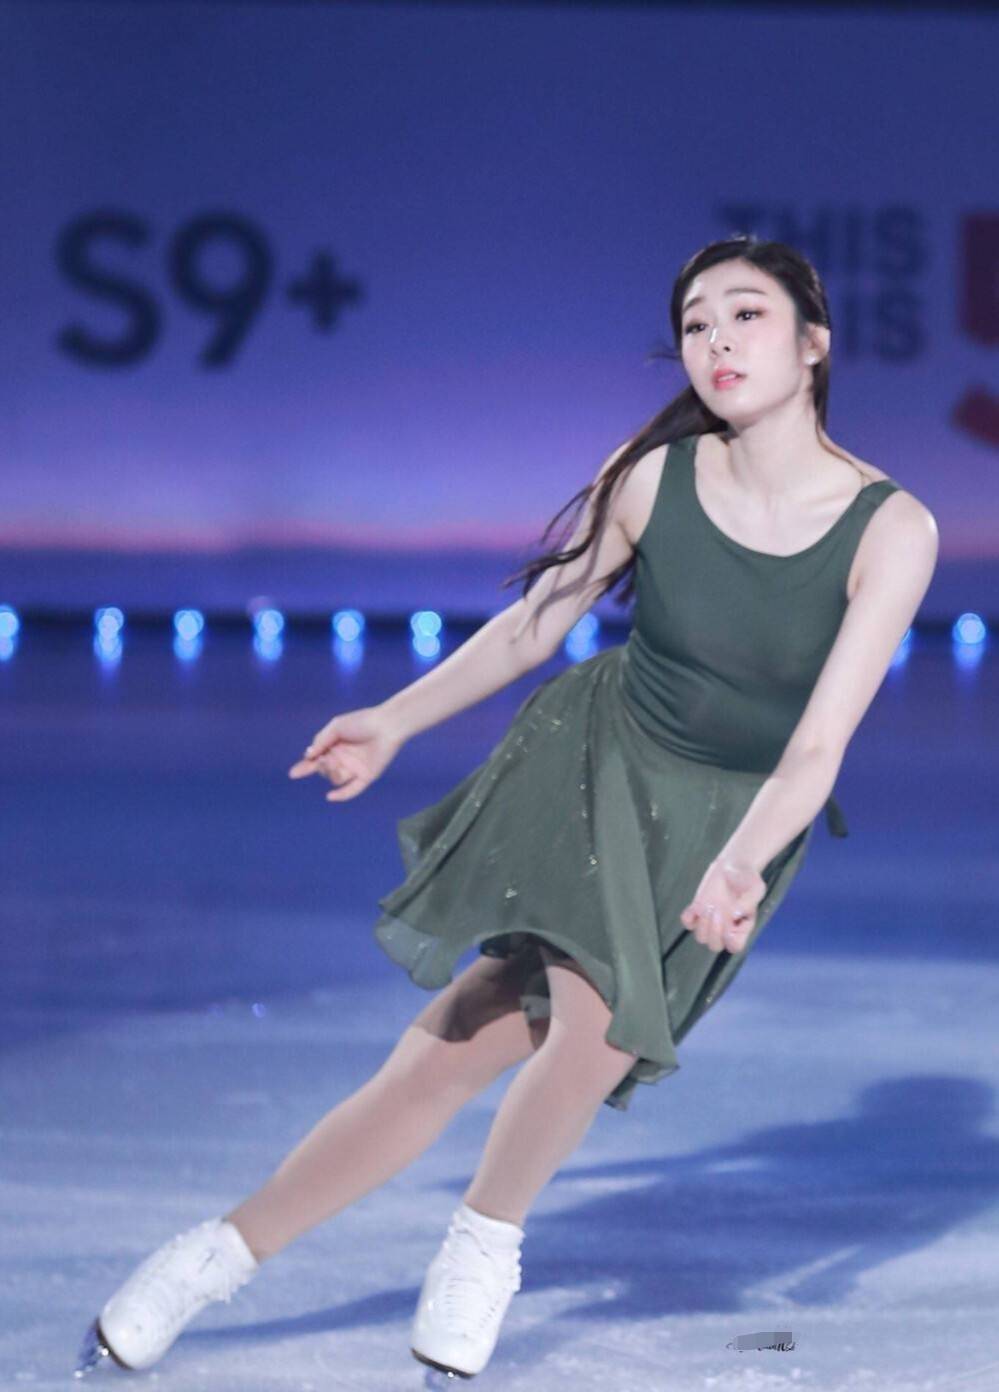 韩国前花样滑冰运动员金妍儿,身材优越,穿意大利高雅灰连衣裙,美成